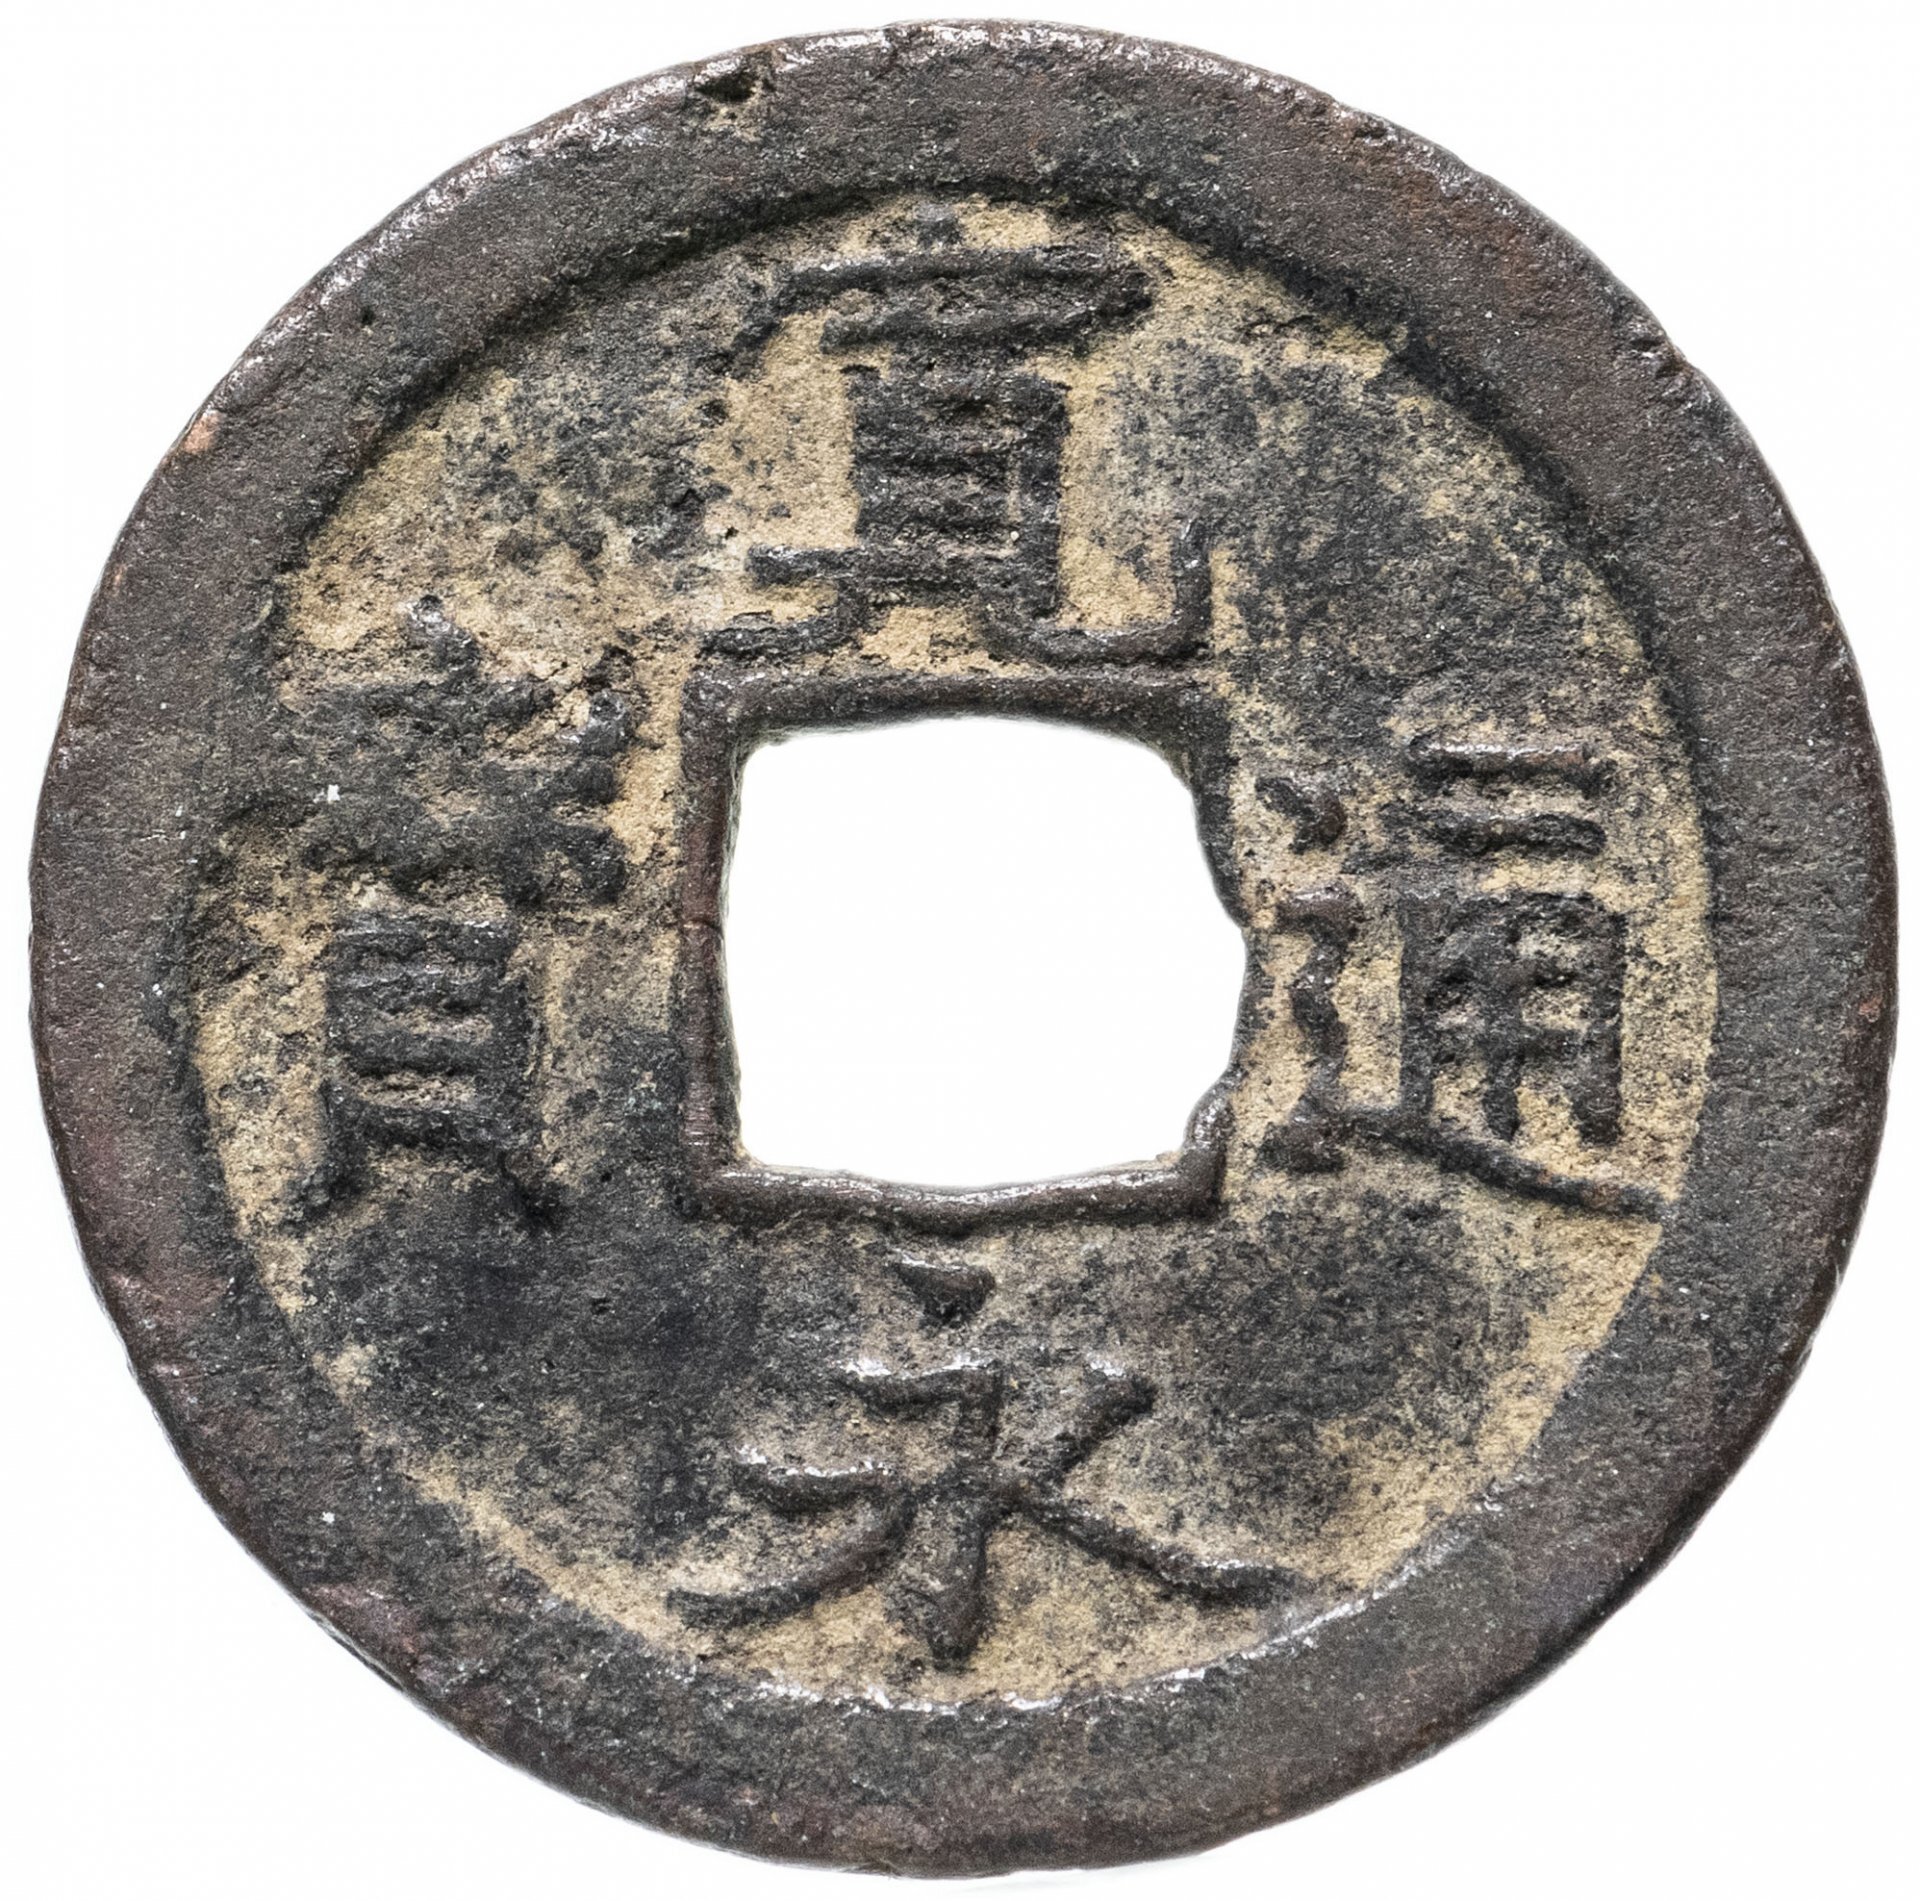 Название японской монеты 5 букв